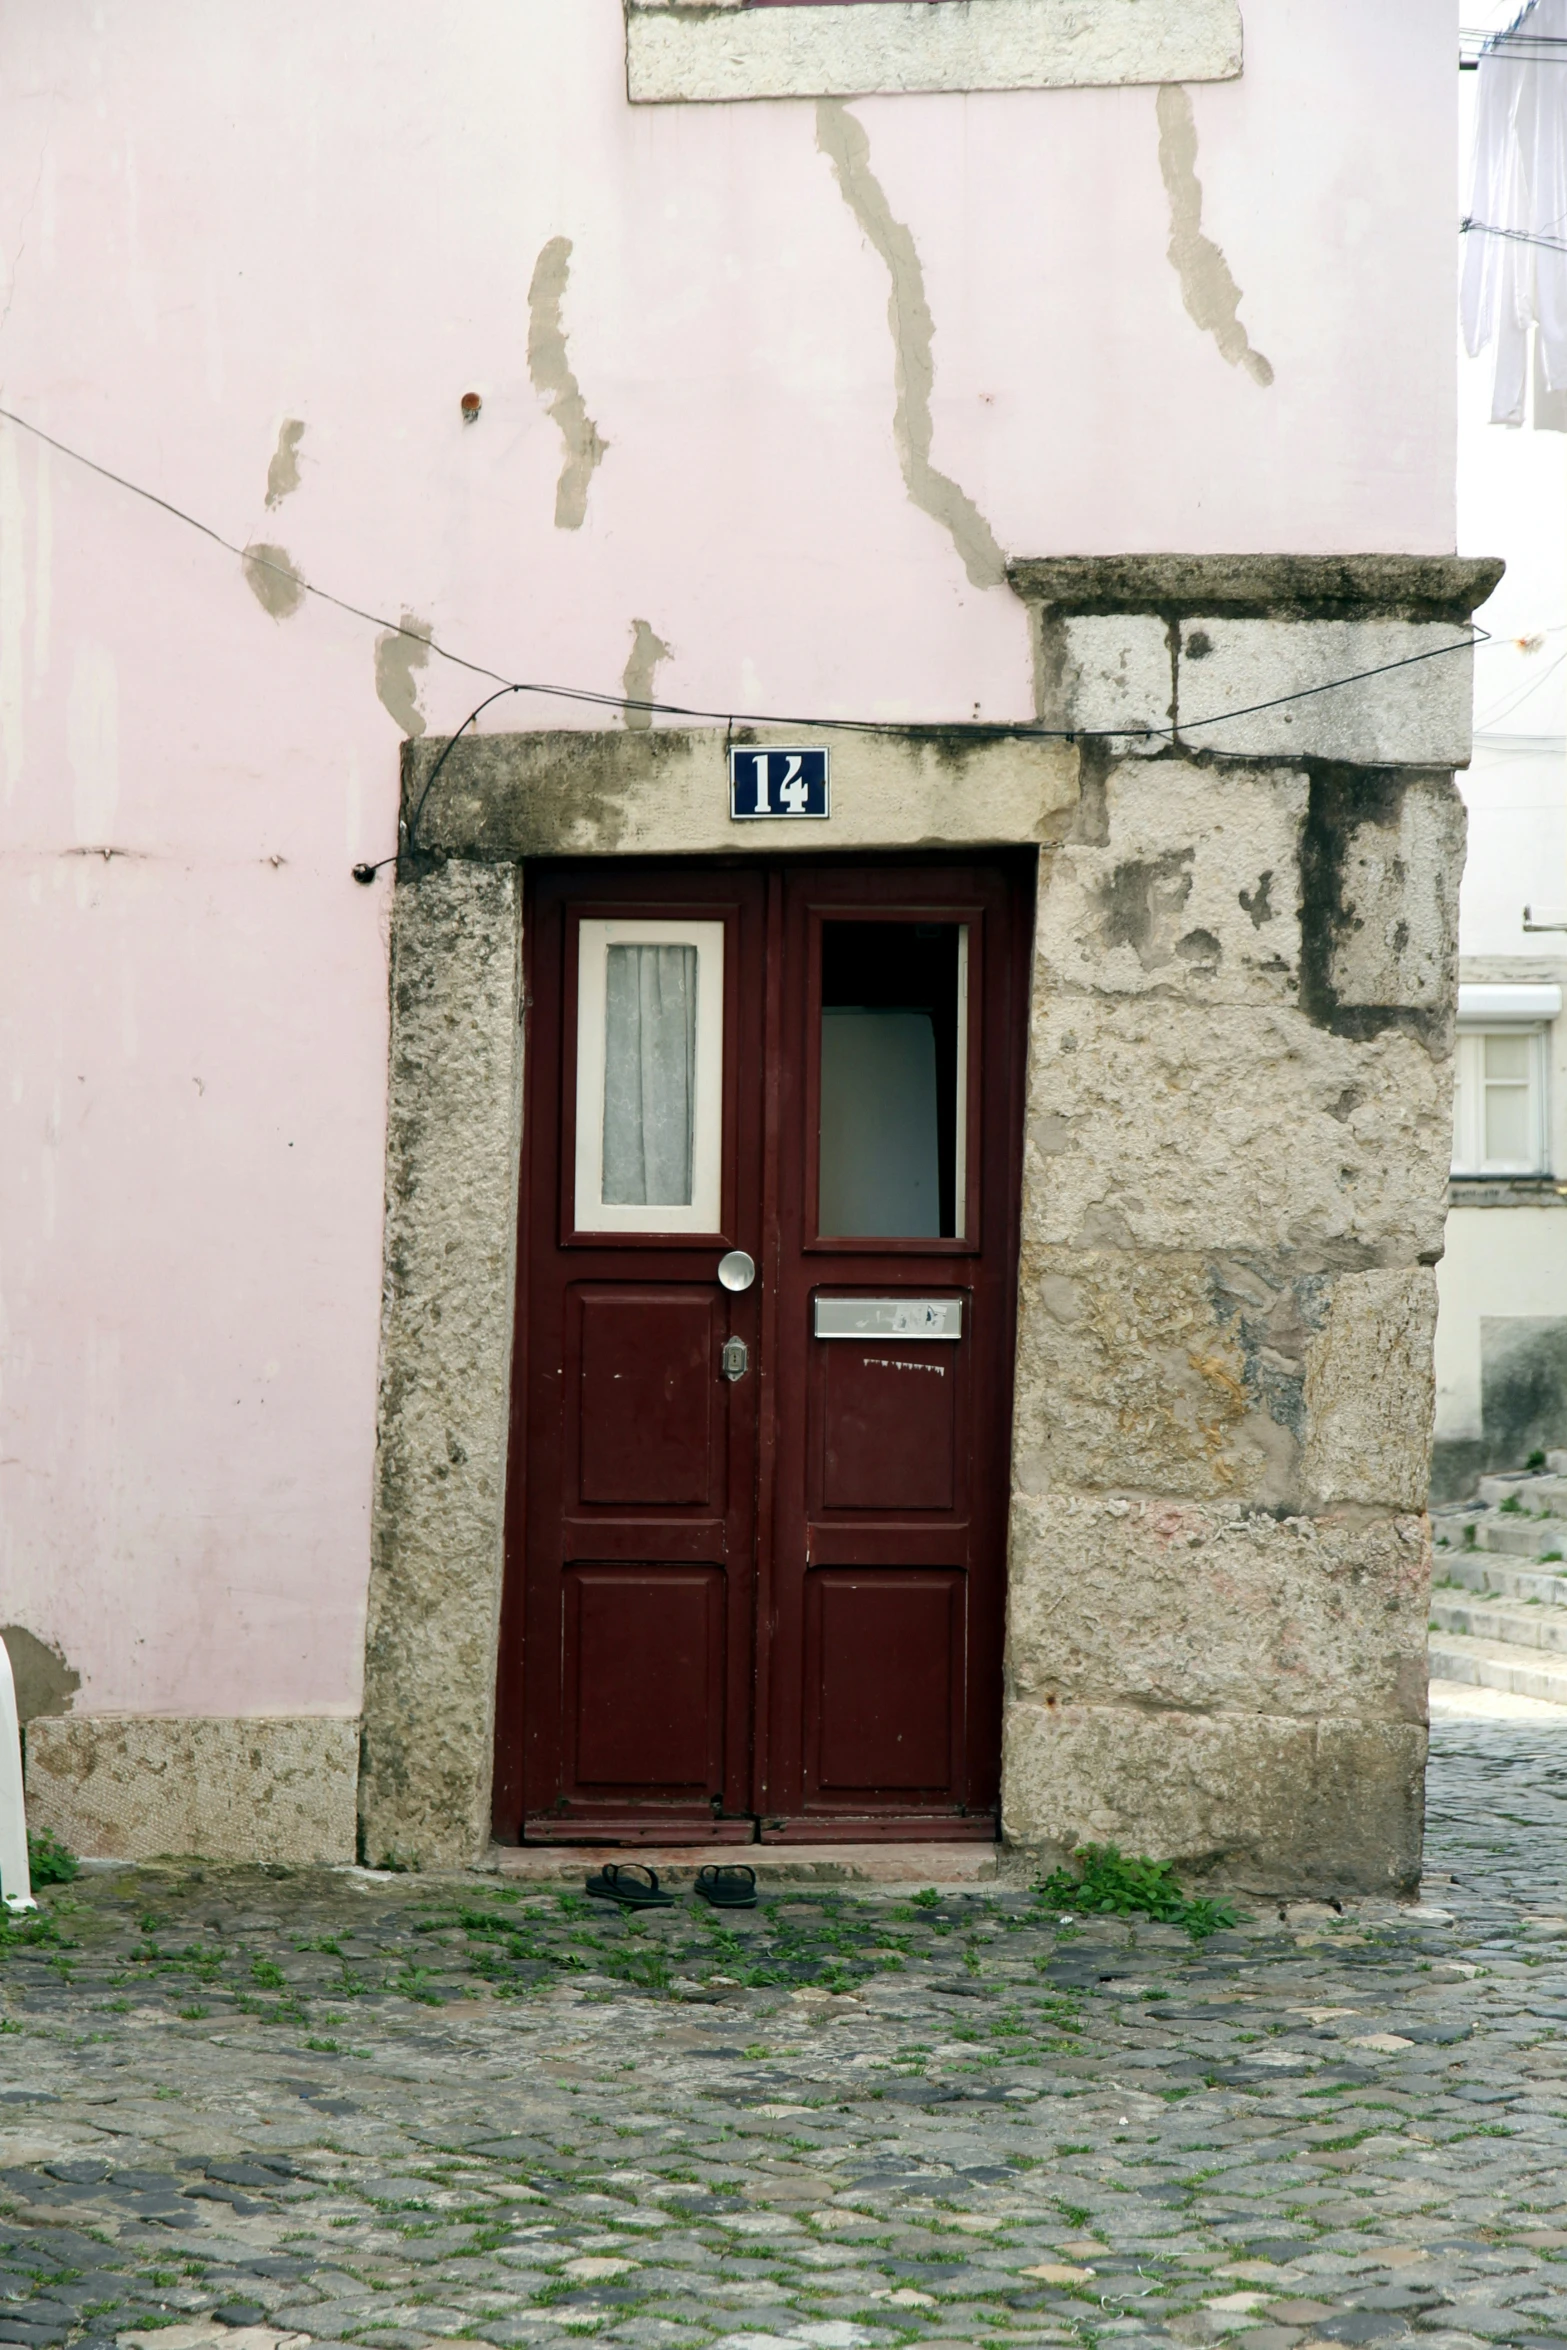 a doorway is shown with a red door